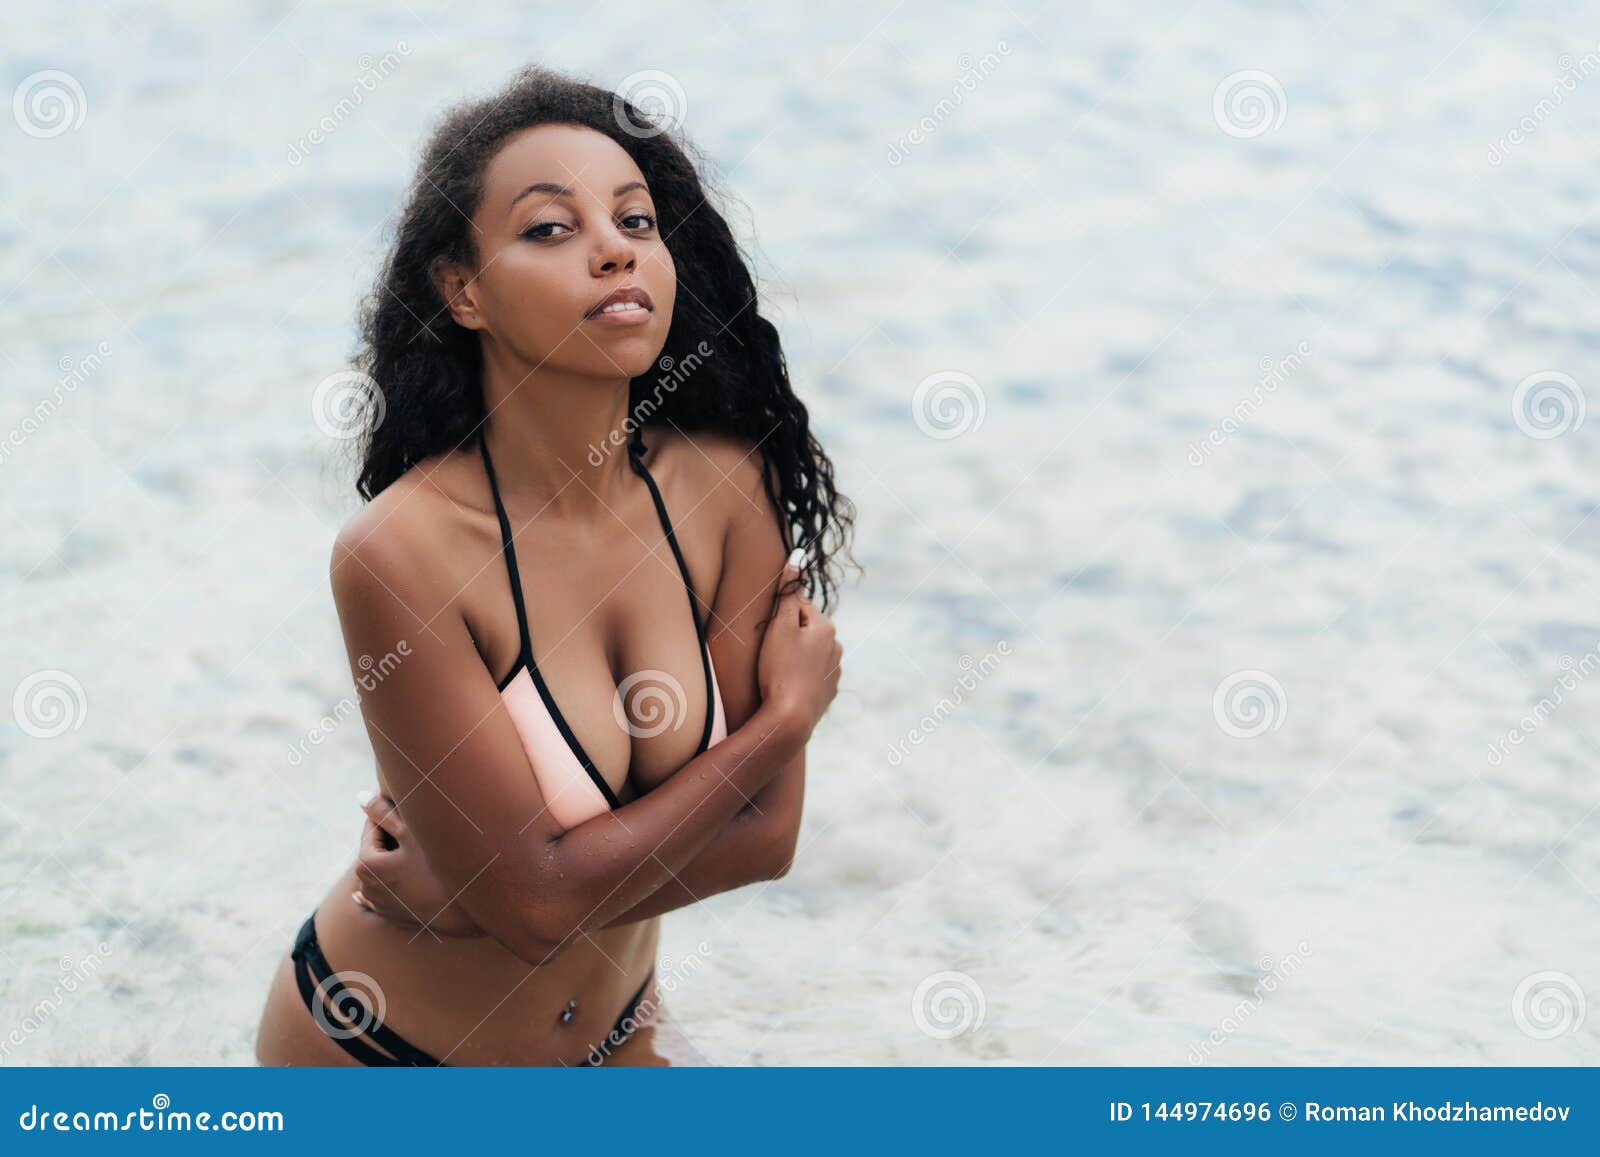 girls tits voyeur beach